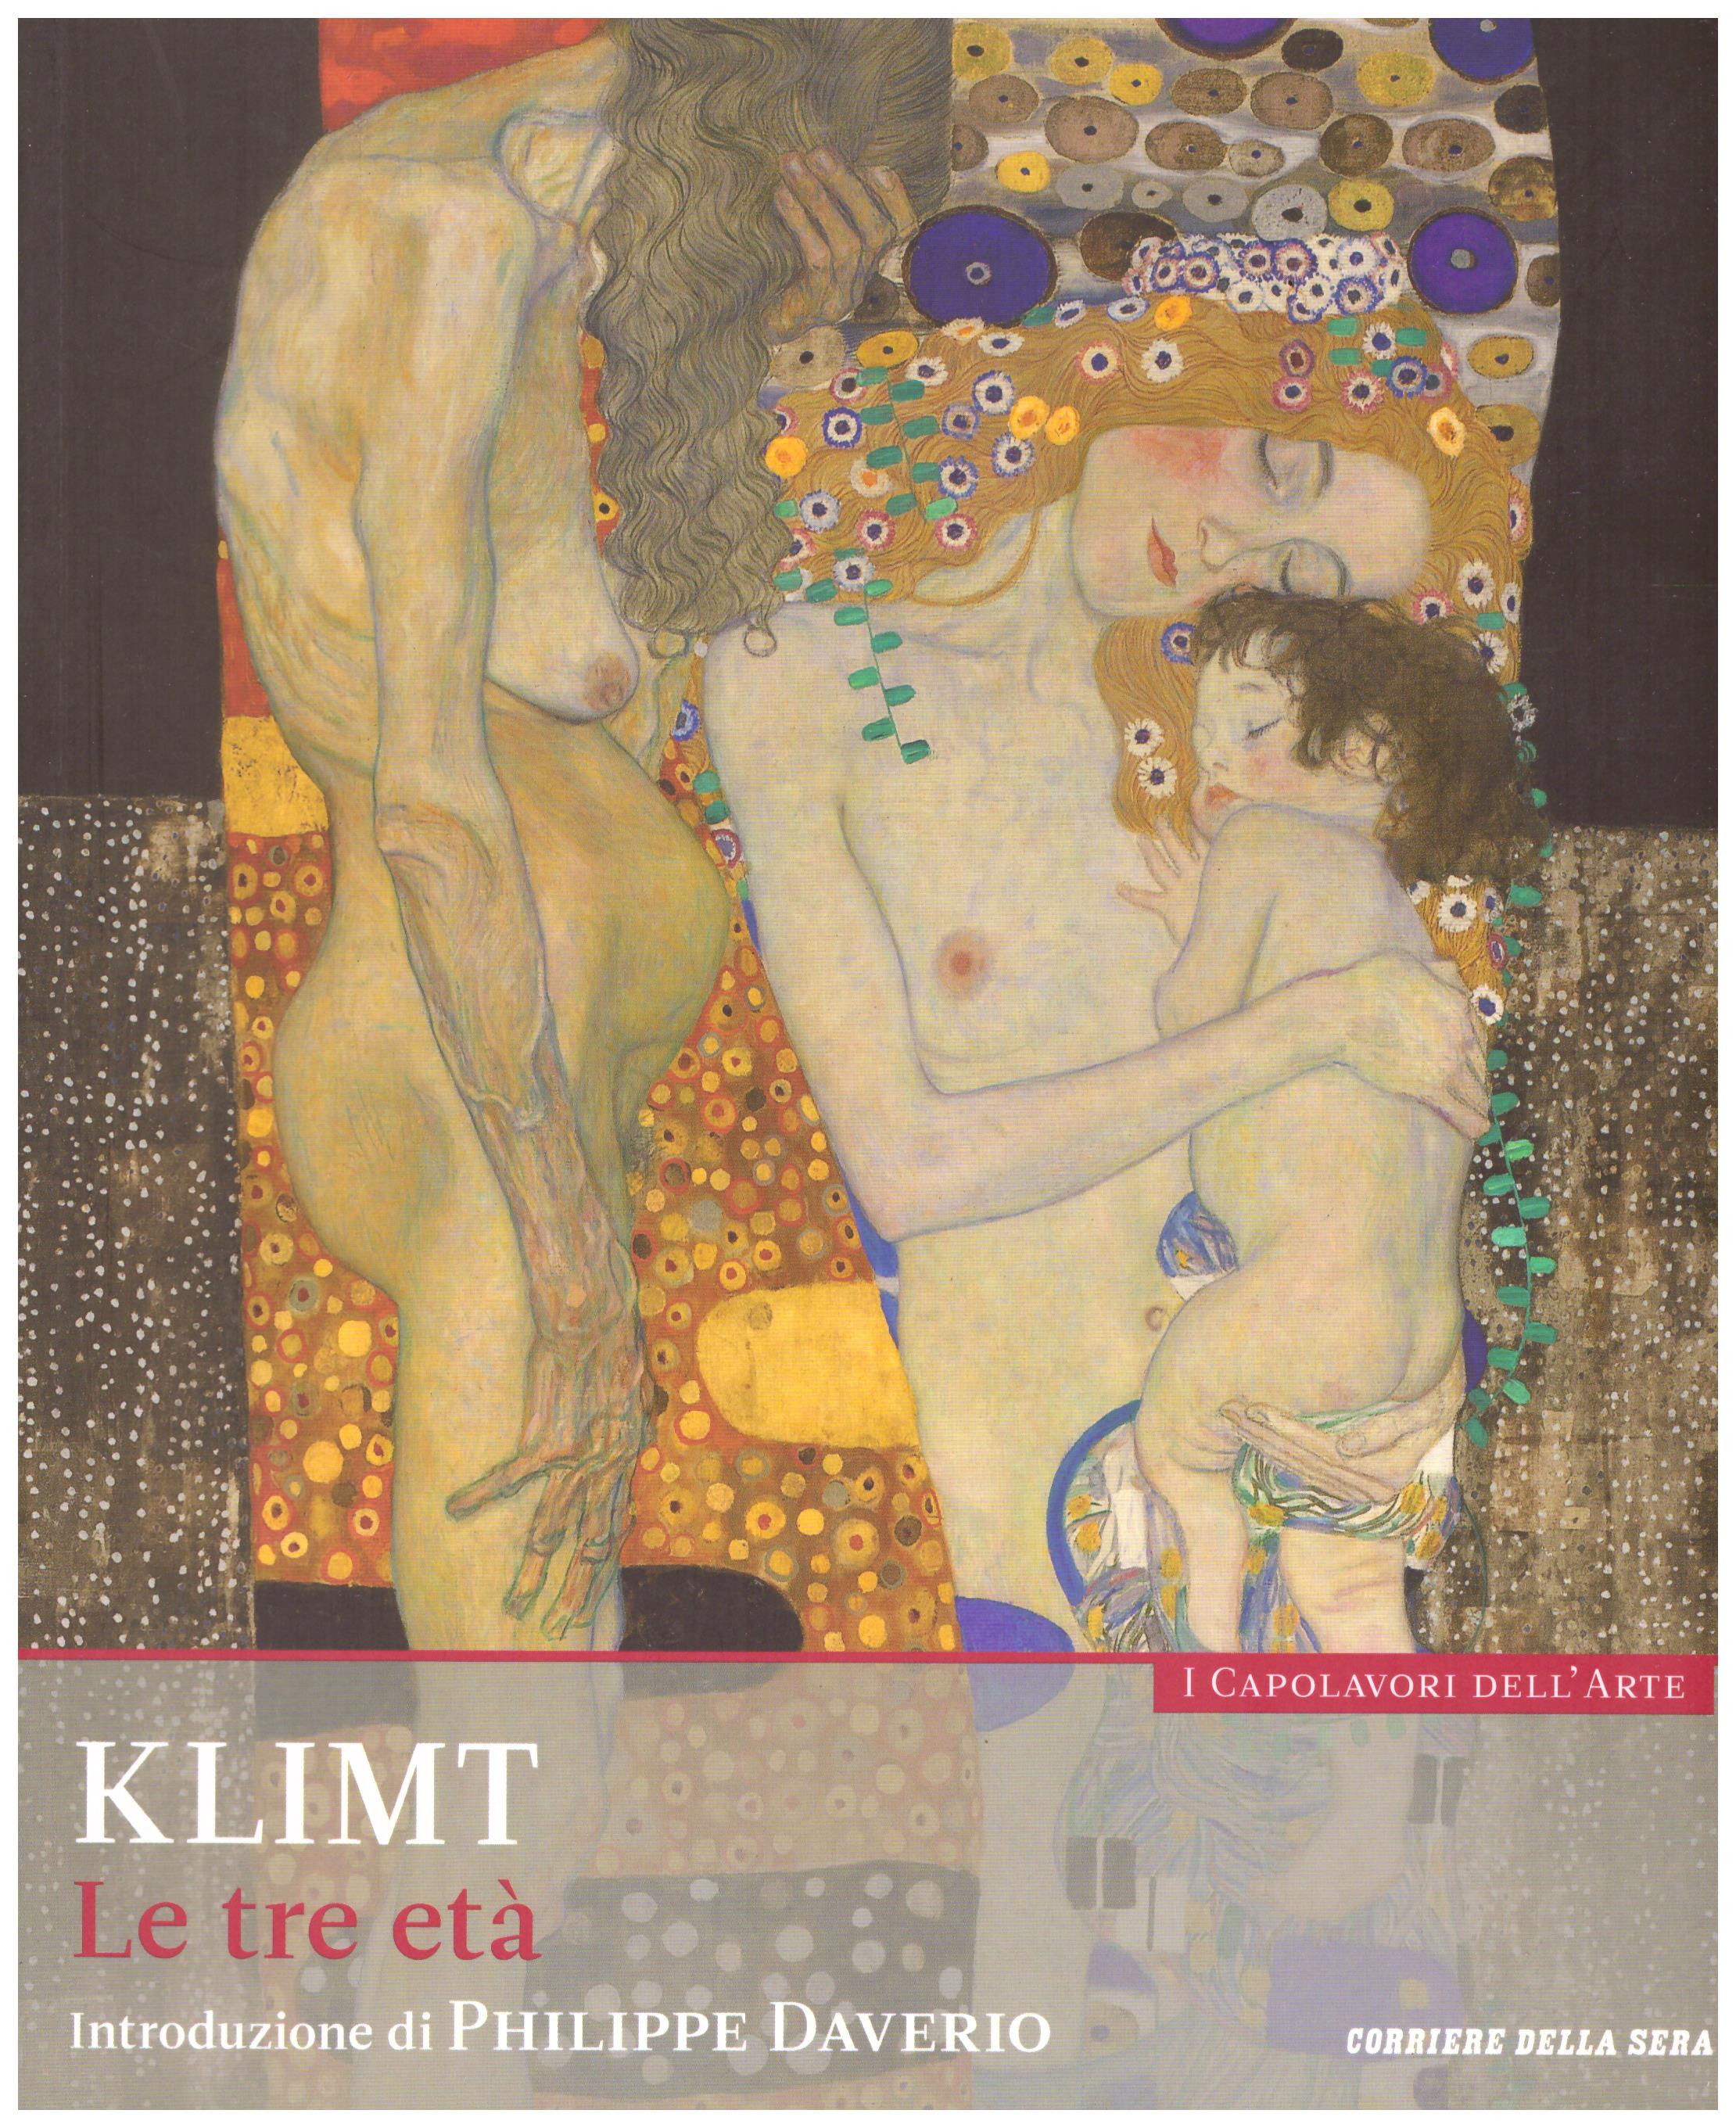 Titolo: I capolavori dell'arte, Klimt  n.7  Autore : AA.VV.   Editore: education,it/corriere della sera, 2015